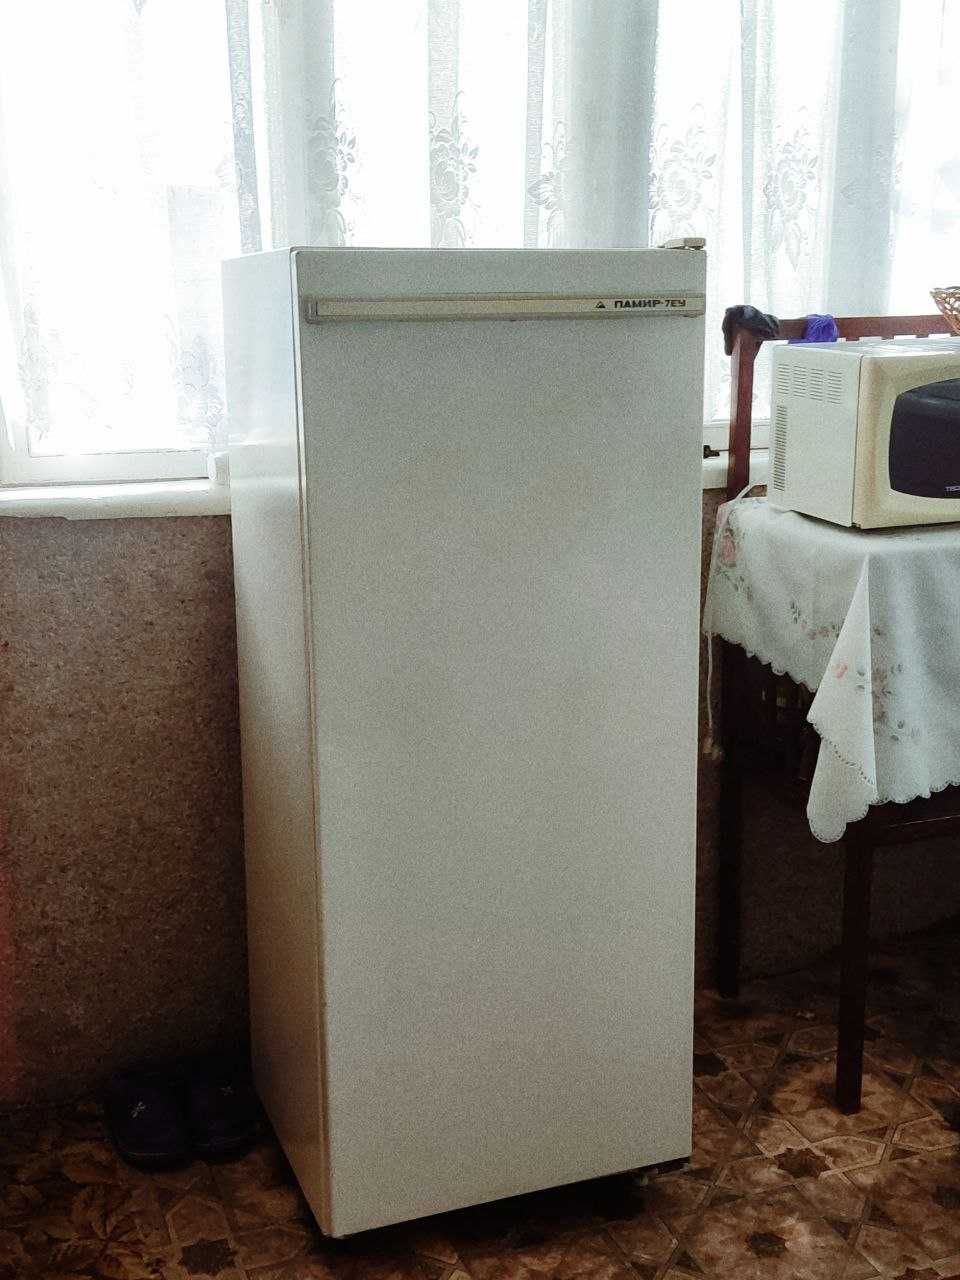 Холодильник "Памир"